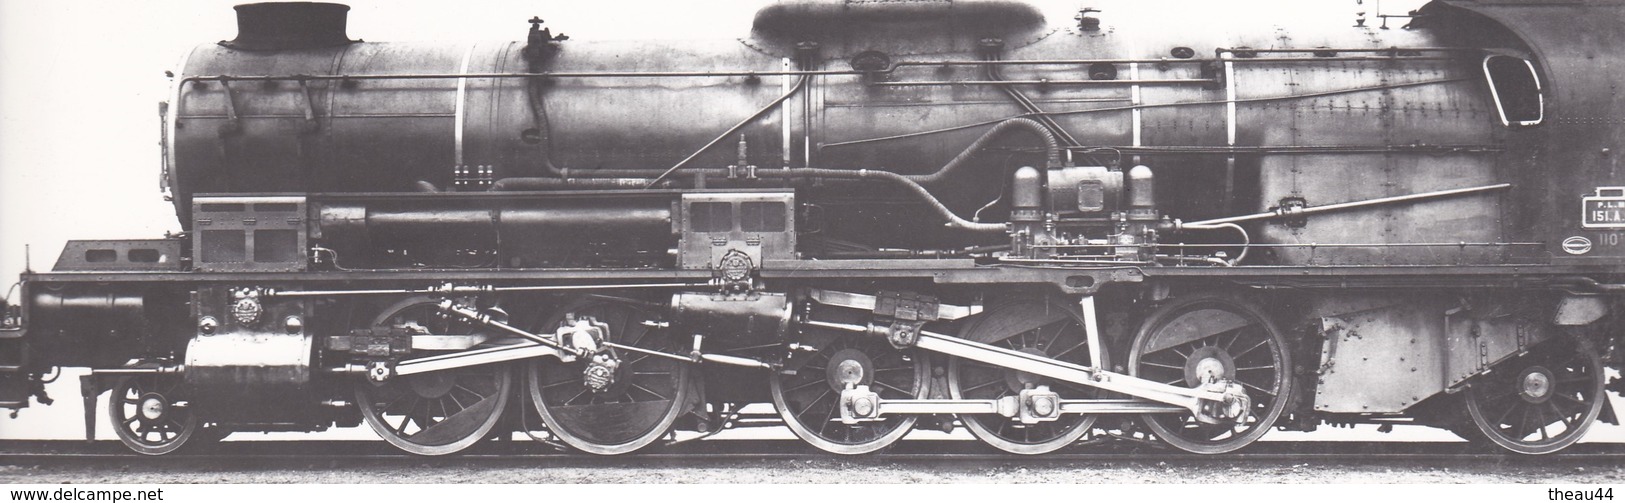 ¤¤  -  Cliché D'une Locomotive Du P.L.M. N° 151.A.1   -  Voir Description   -   ¤¤ - Equipment